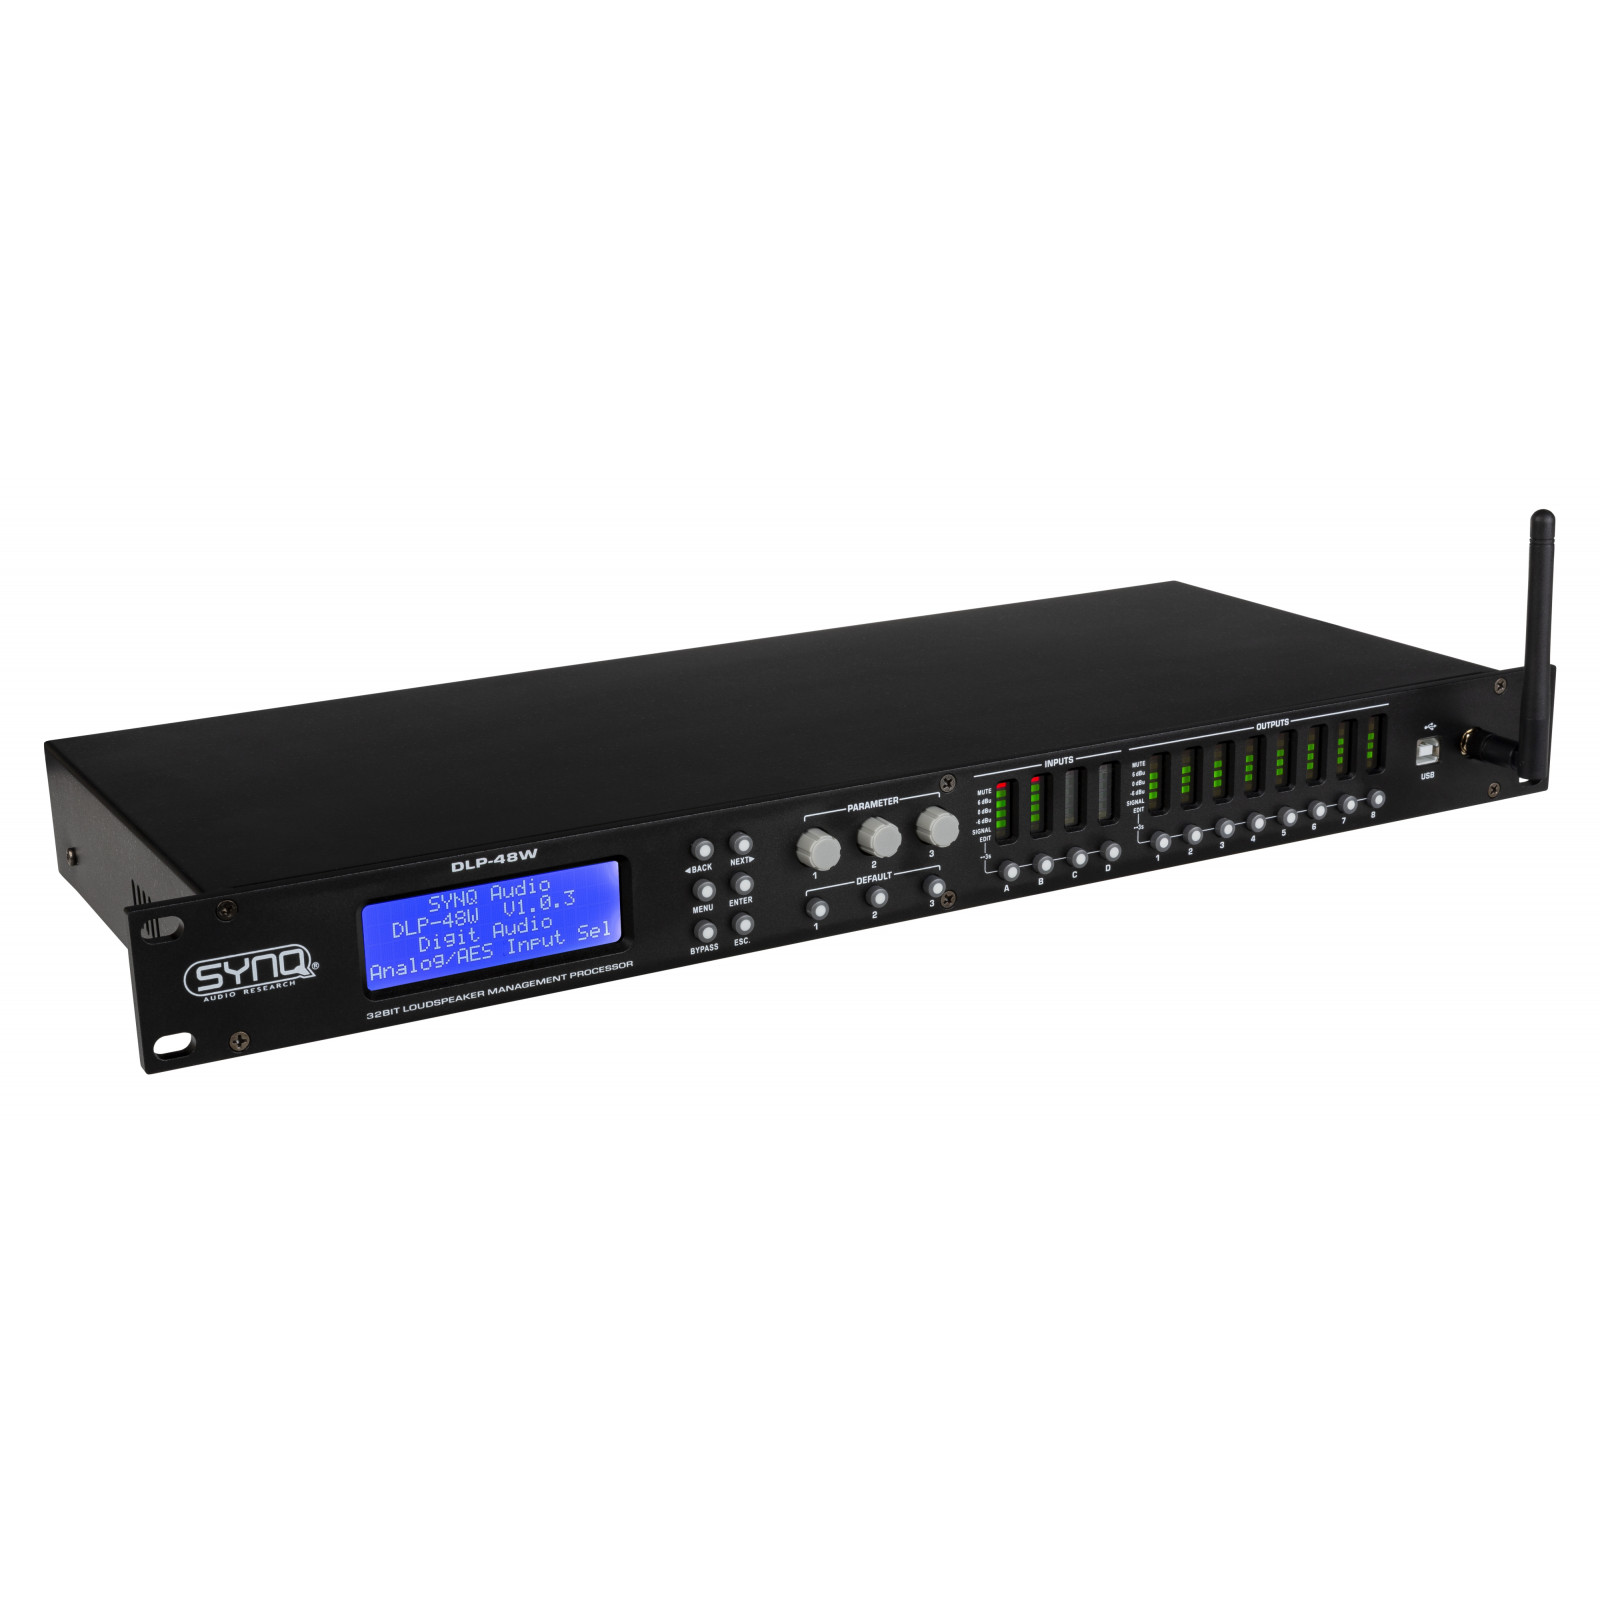 Synq DLP-48W digitales Lautsprechermanagement